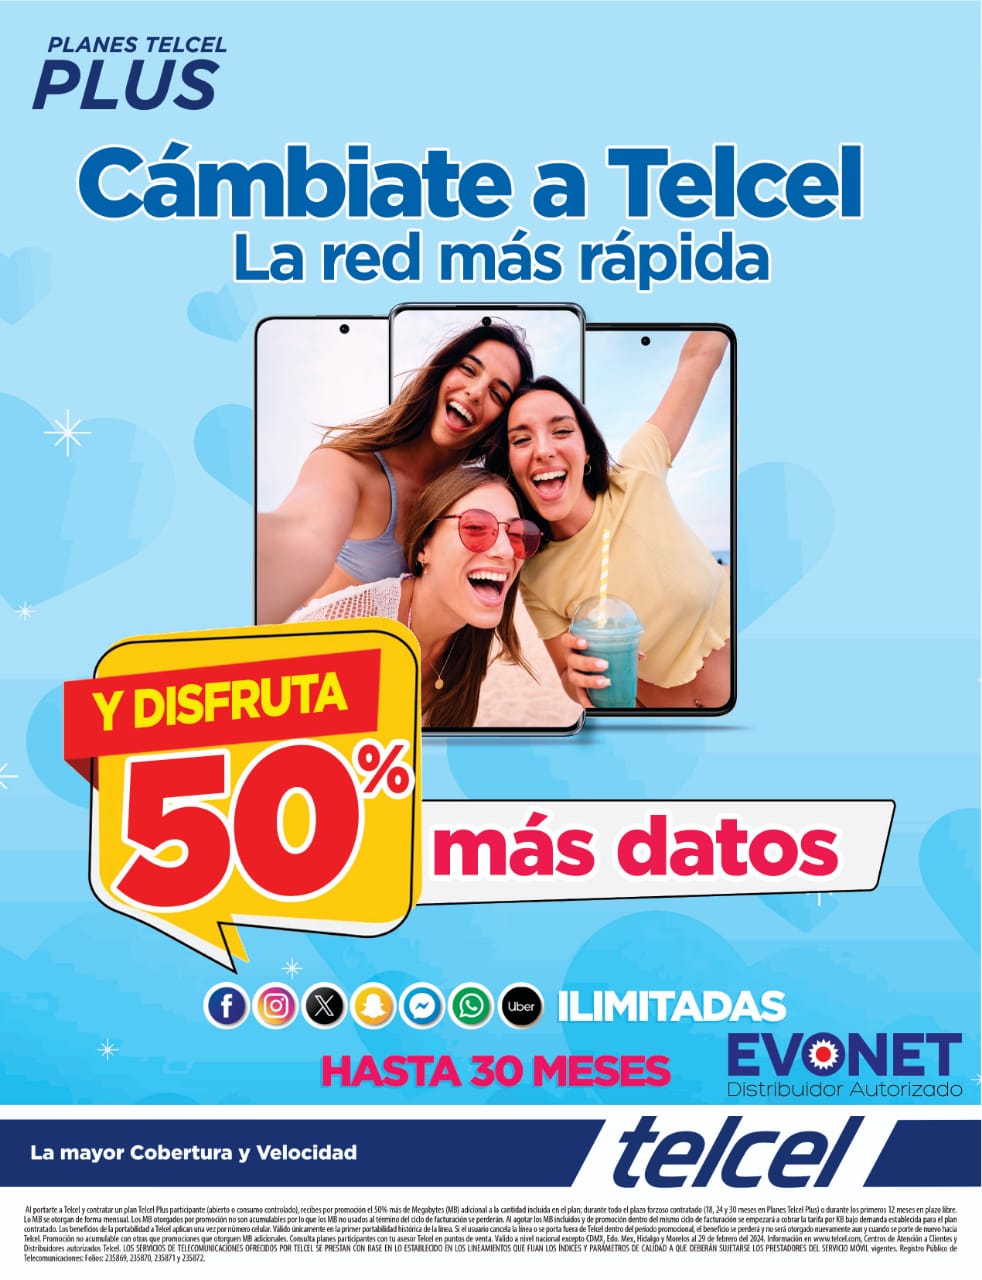 Cámbiate a Telcel – Evonet Zitácuaro